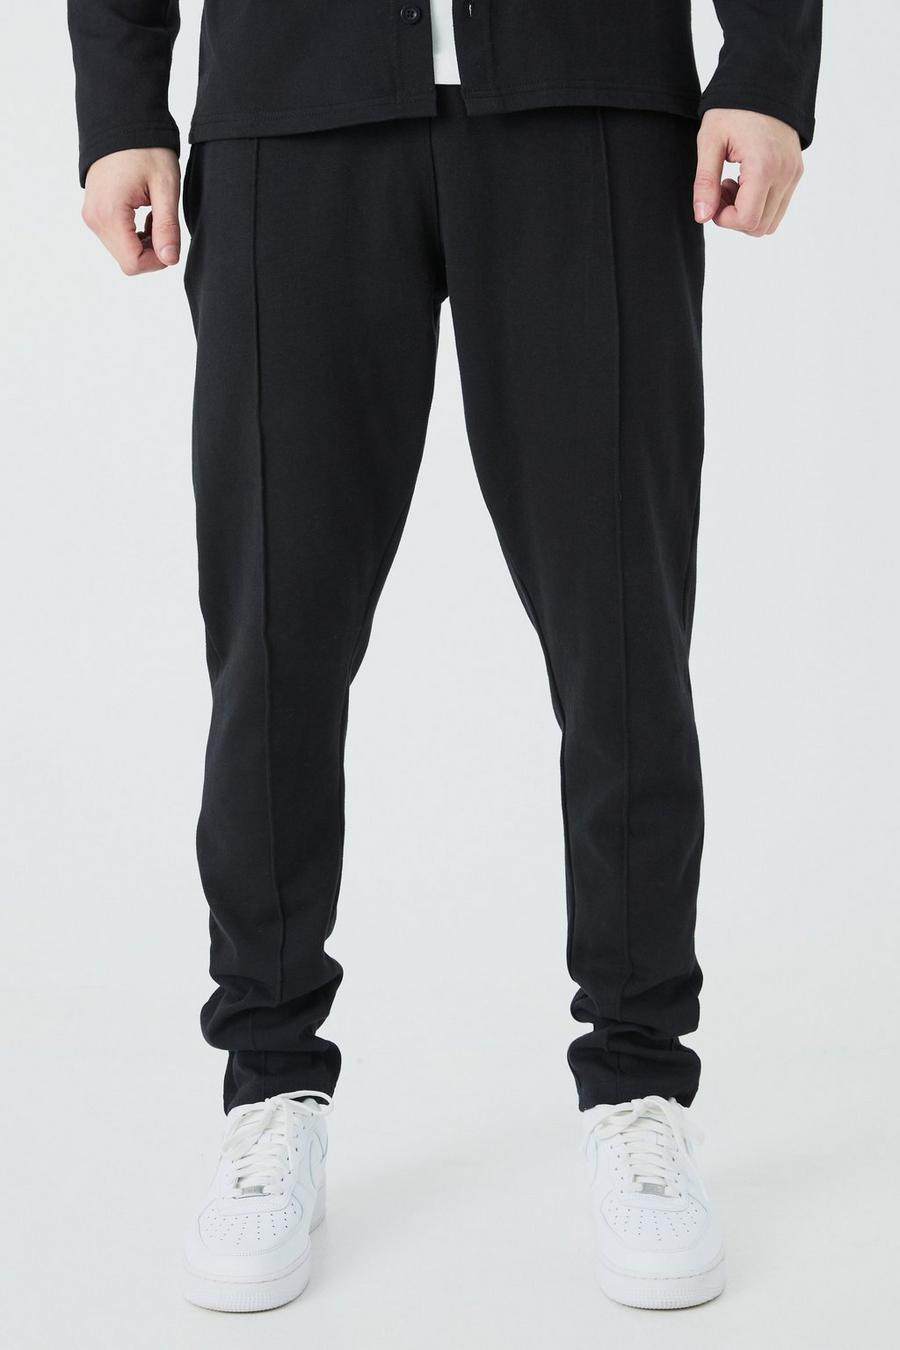 Pantalón deportivo Tall ajustado ajustado con alforza, Black